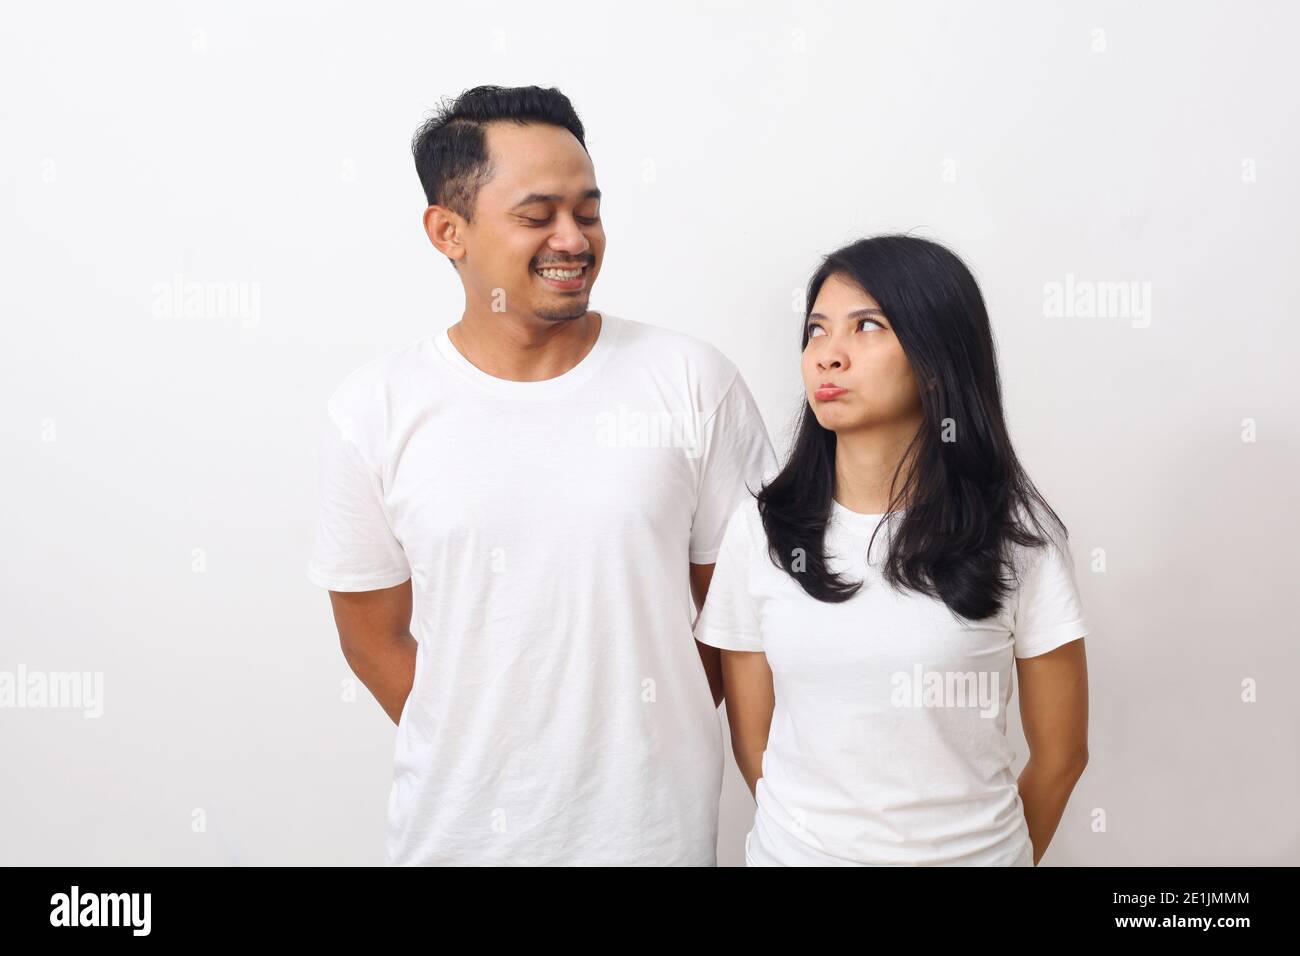 Accigliata donna carina mentre guarda il suo ragazzo. Coppia asiatica in camicia bianca isolata su sfondo bianco con copyspace Foto Stock